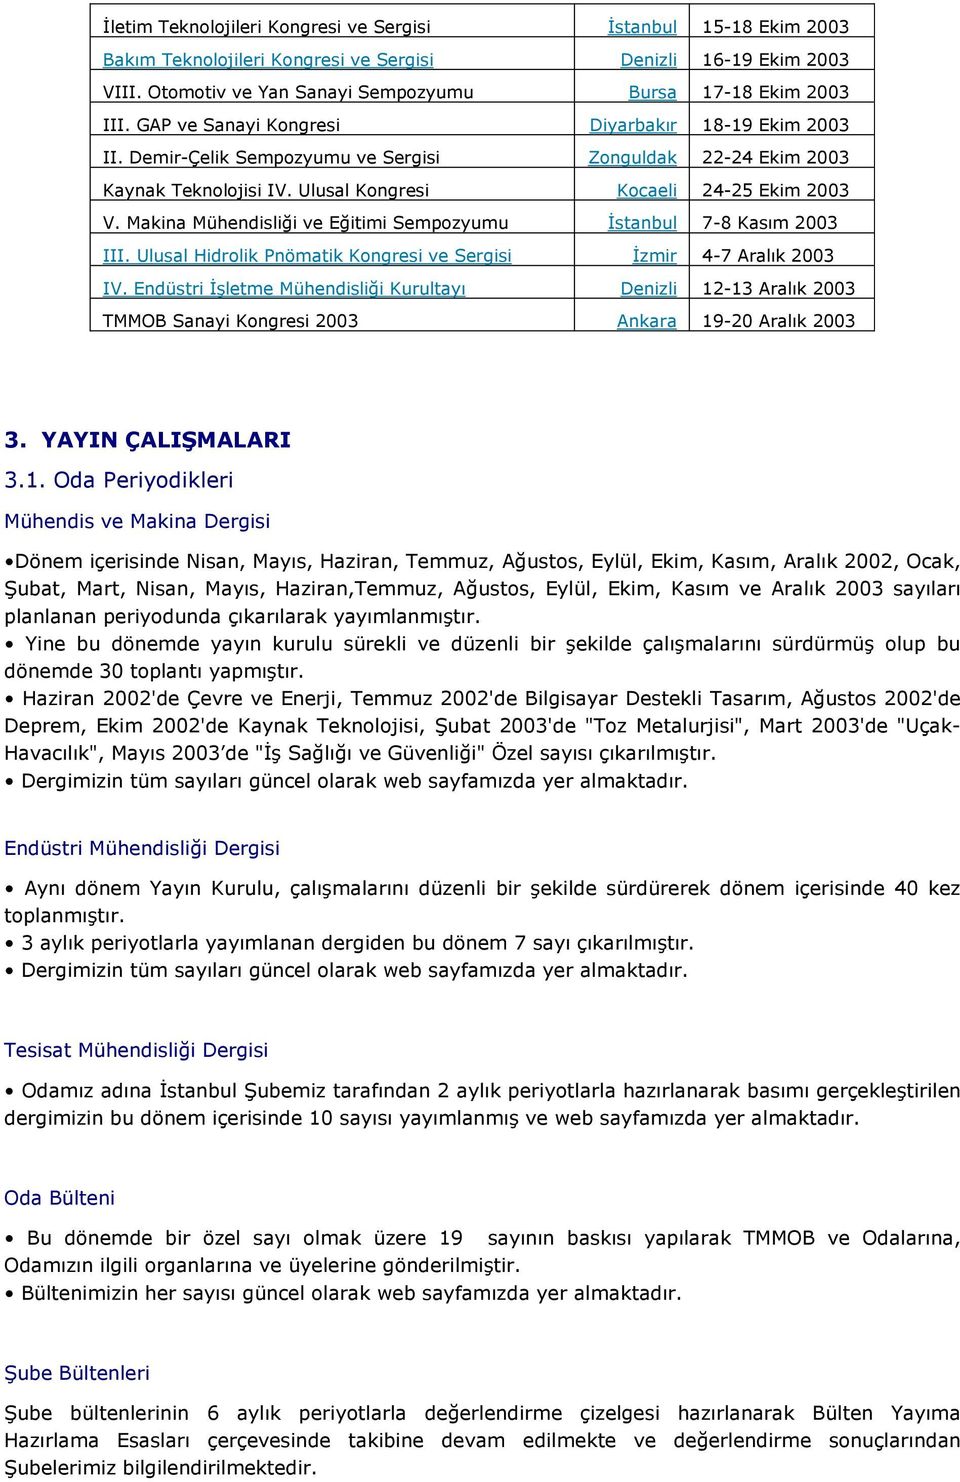 Makina Mühendisliği ve Eğitimi Sempozyumu Đstanbul 7-8 Kasım 2003 III. Ulusal Hidrolik Pnömatik Kongresi ve Sergisi Đzmir 4-7 Aralık 2003 IV.